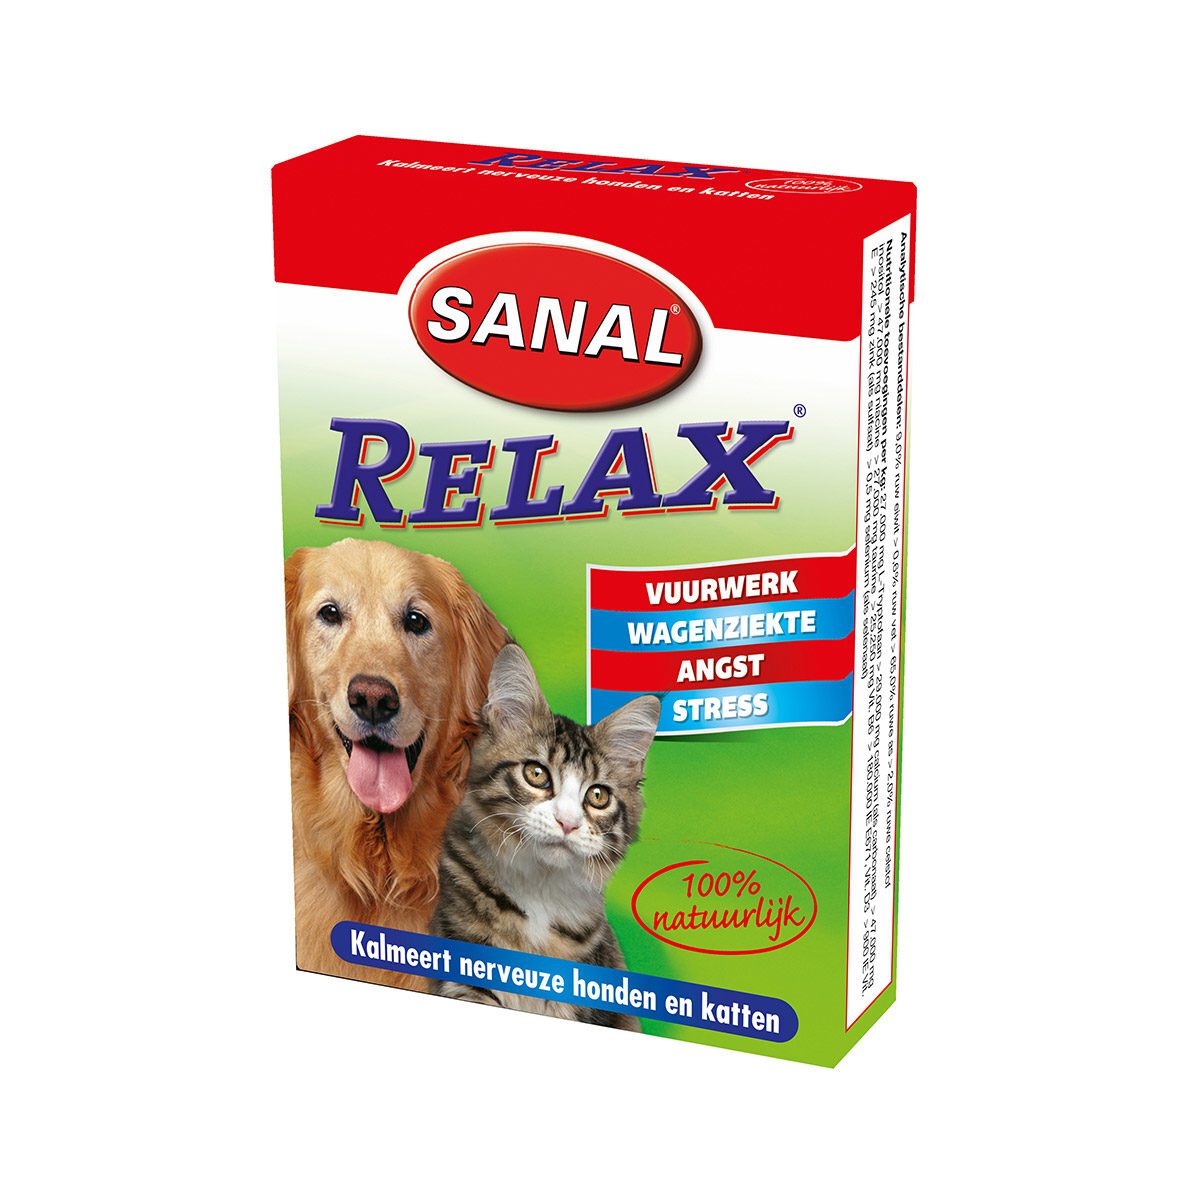 Sanal Relax kalmeringstabletten voor hond en kat